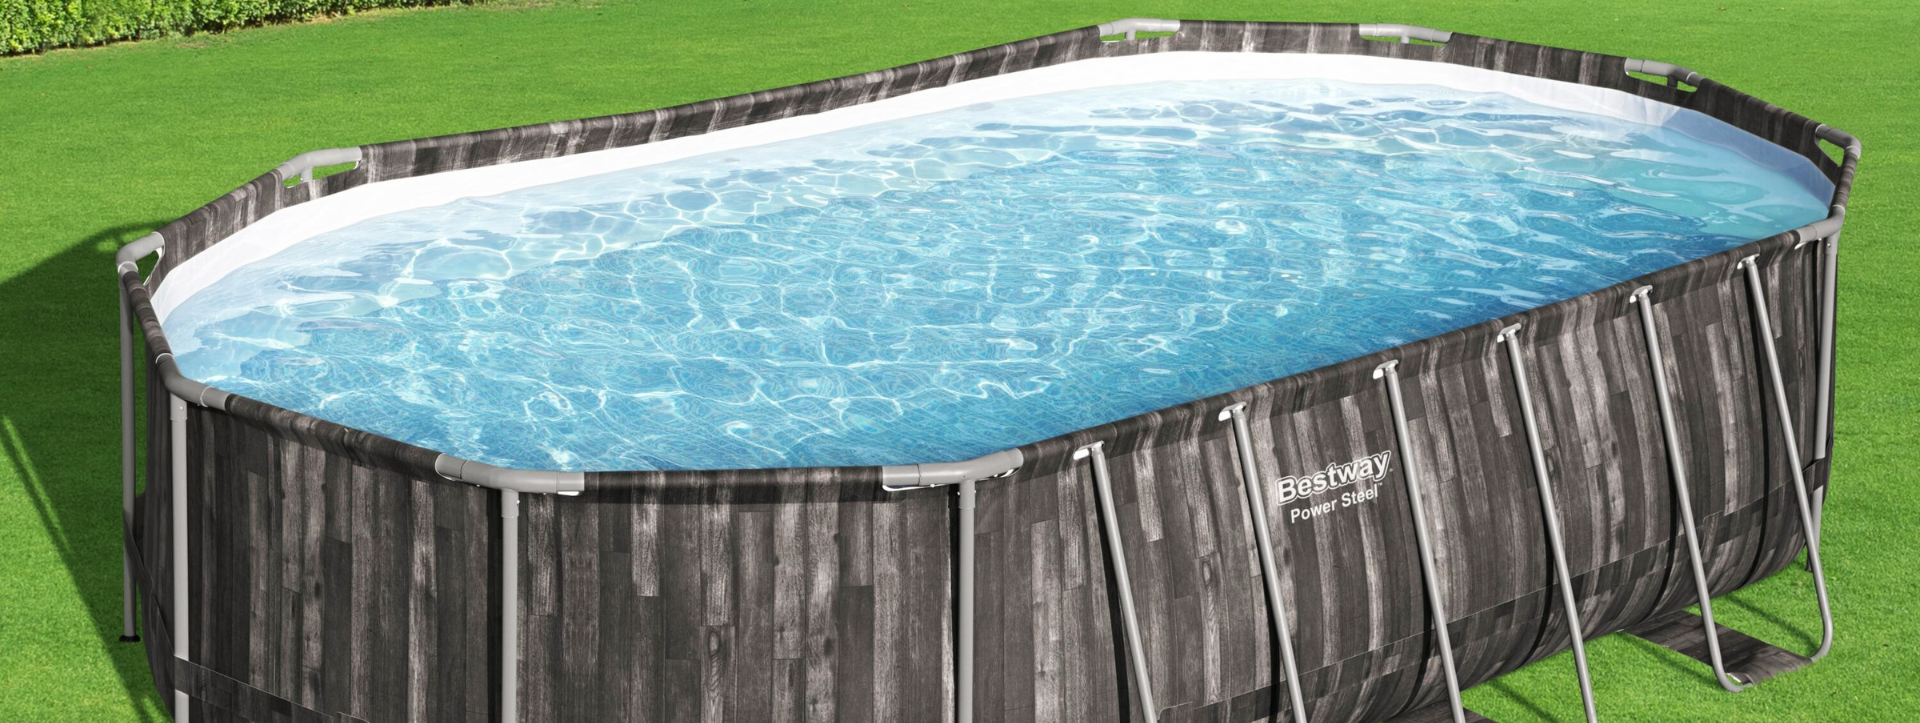 Comment chauffer l’eau d’une piscine hors sol ?